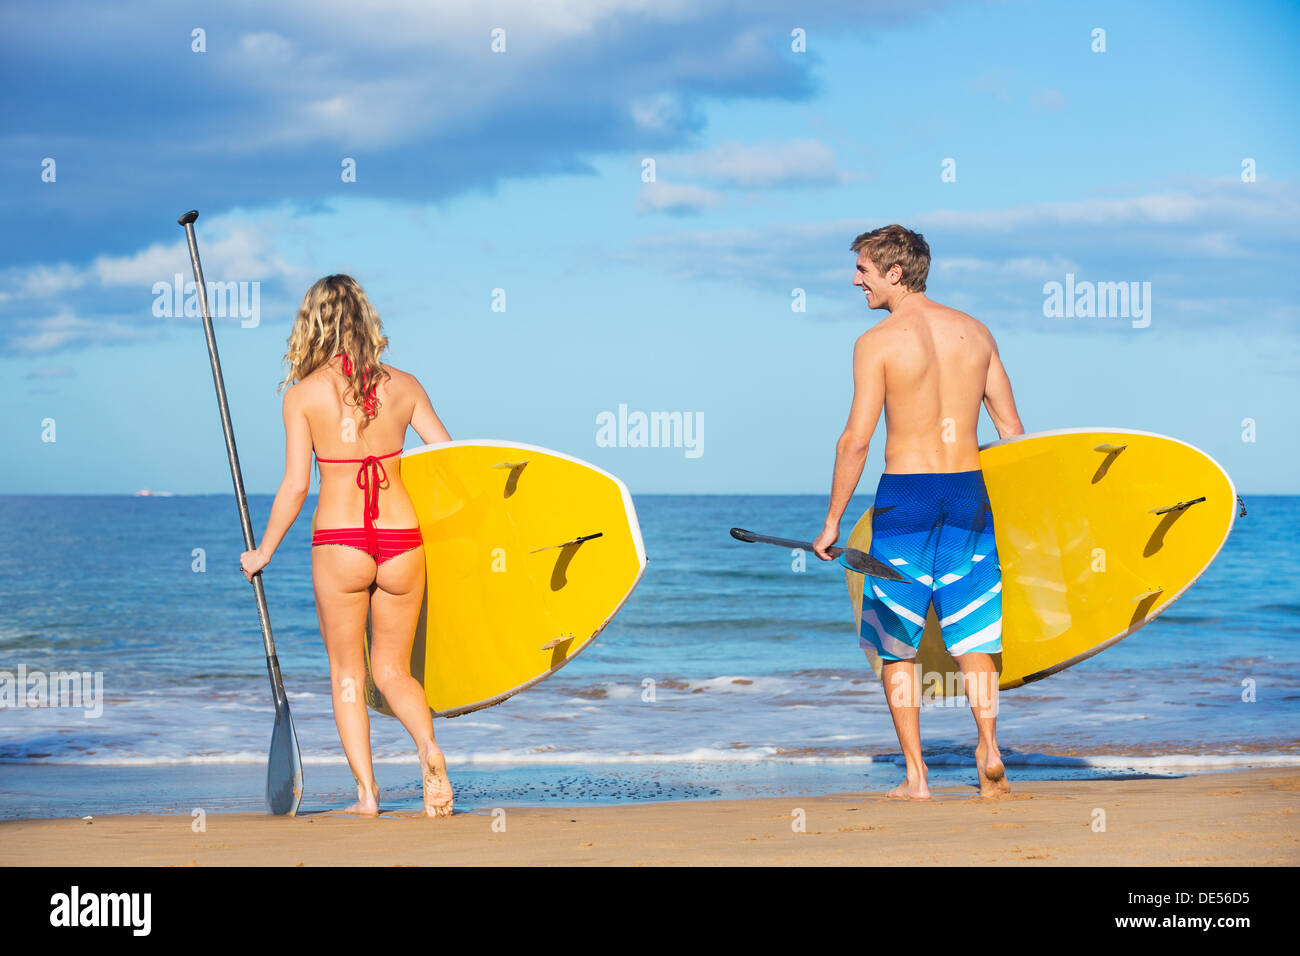 Attraktives Paar Stand Up Paddeln in Hawaii, aktives Leben-Konzept Stockfoto